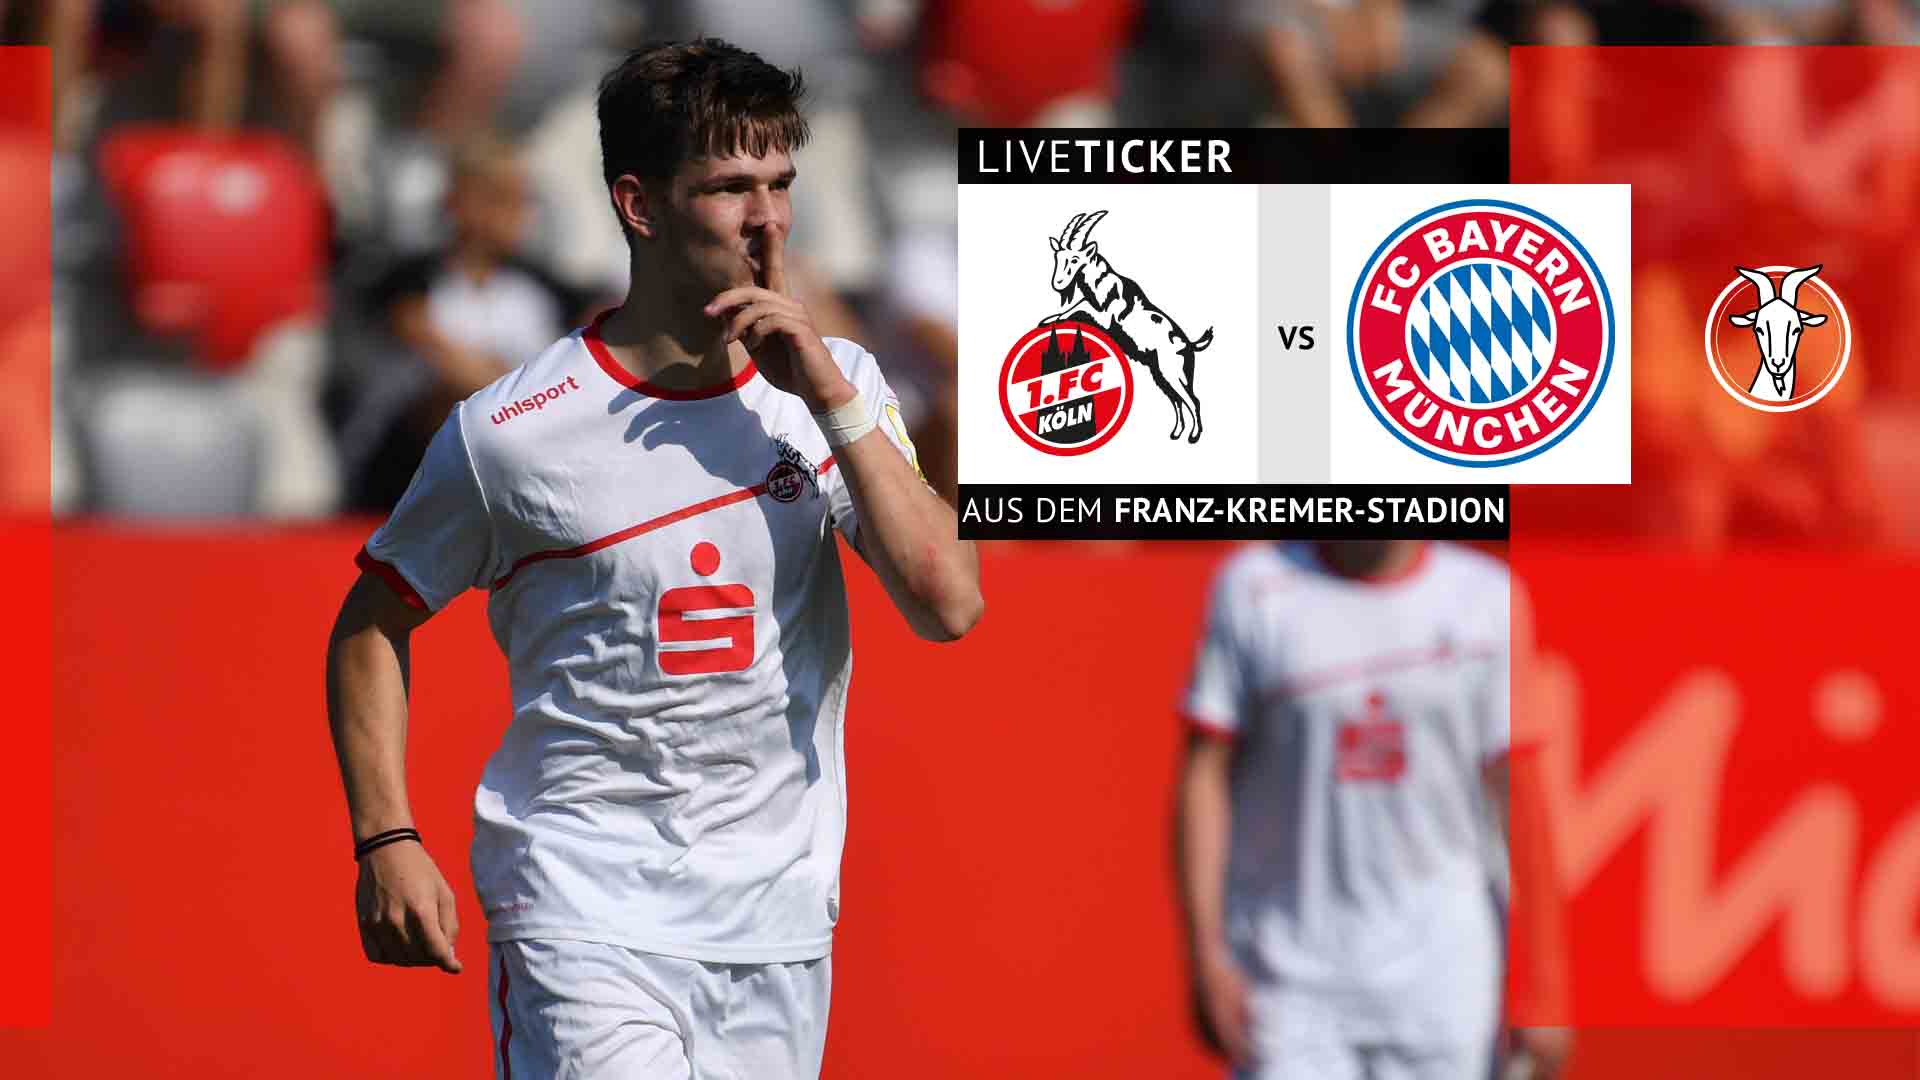 Liveticker: Schafft die U17 gegen München den Einzug ins Finale?